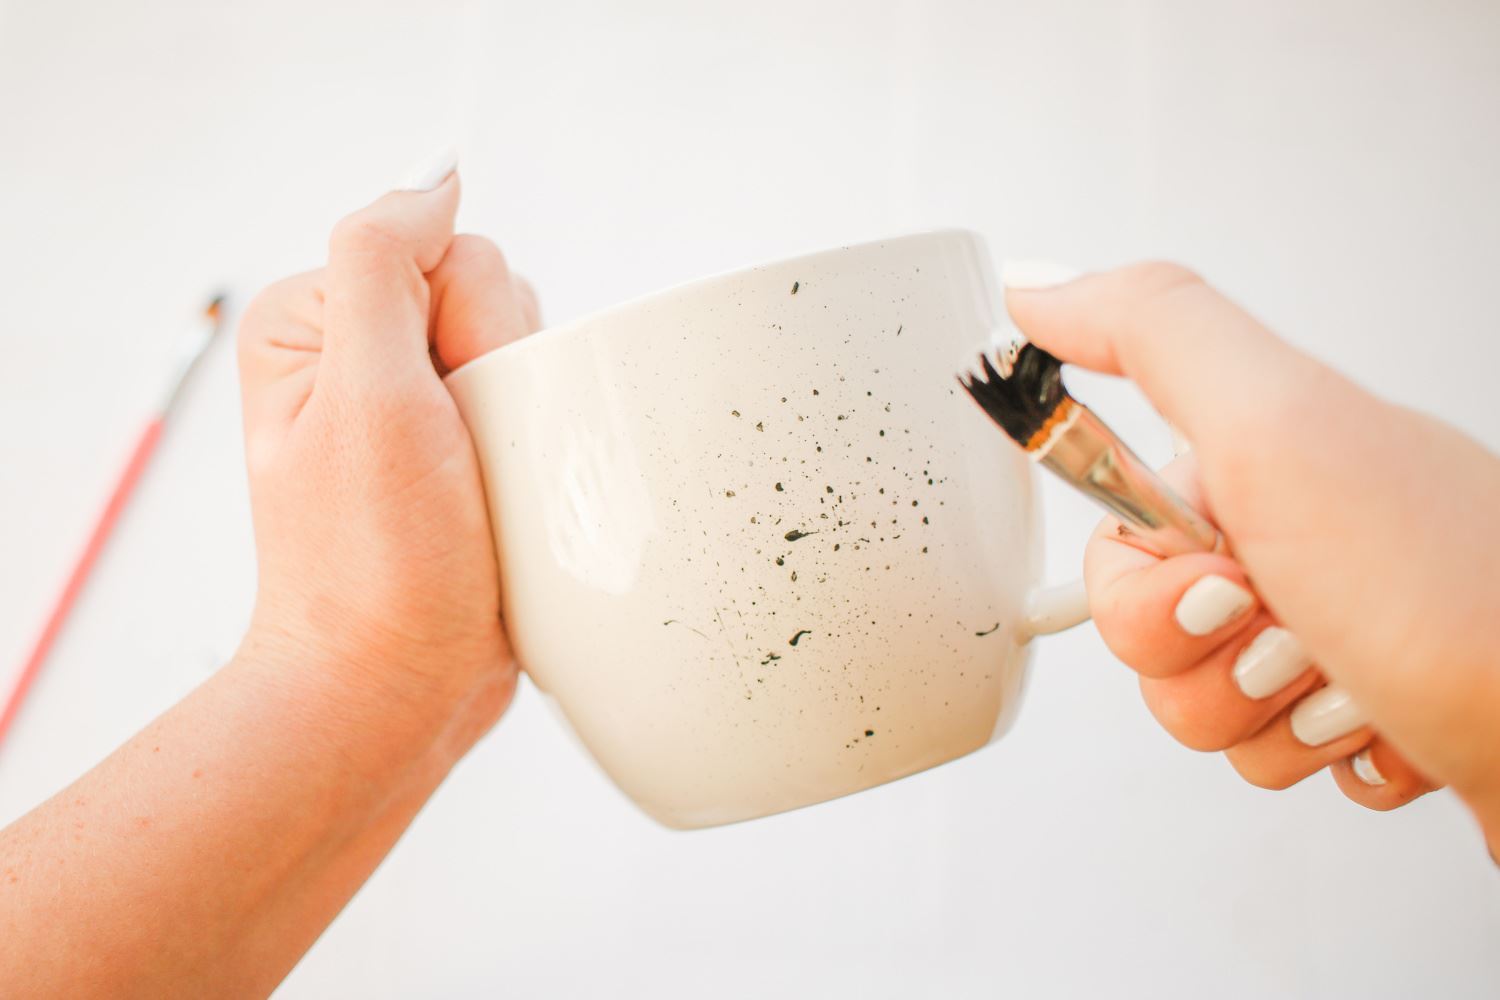 Splatter paint around the mug